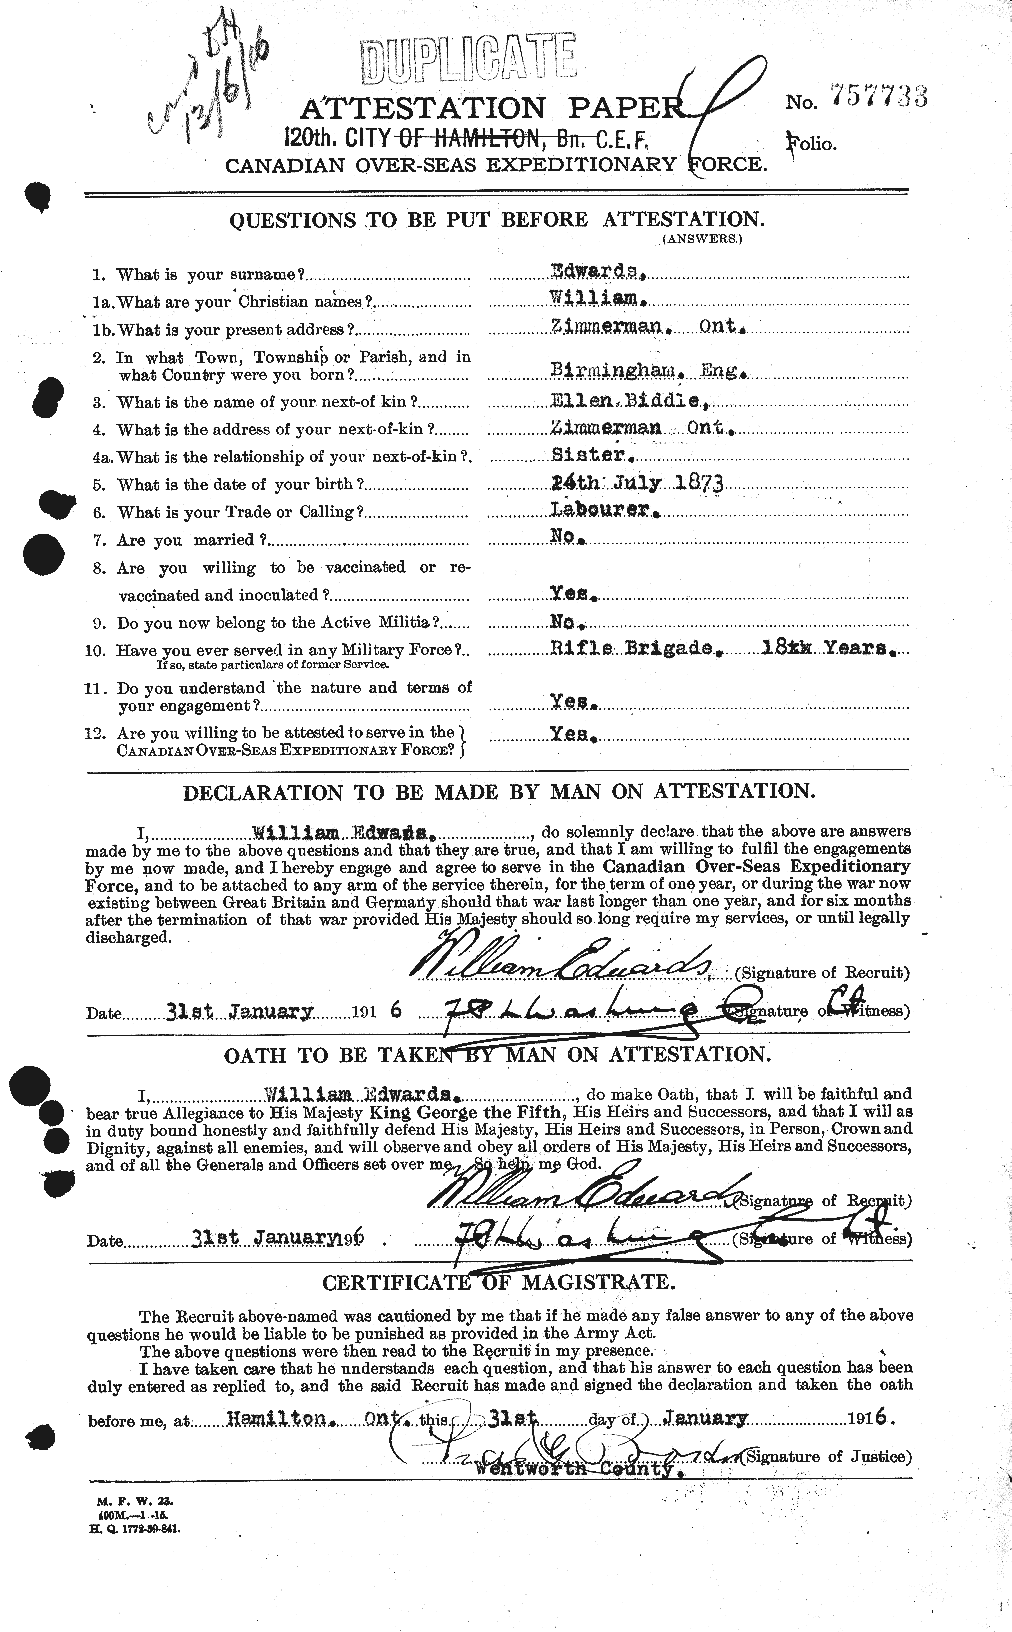 Dossiers du Personnel de la Première Guerre mondiale - CEC 310388a